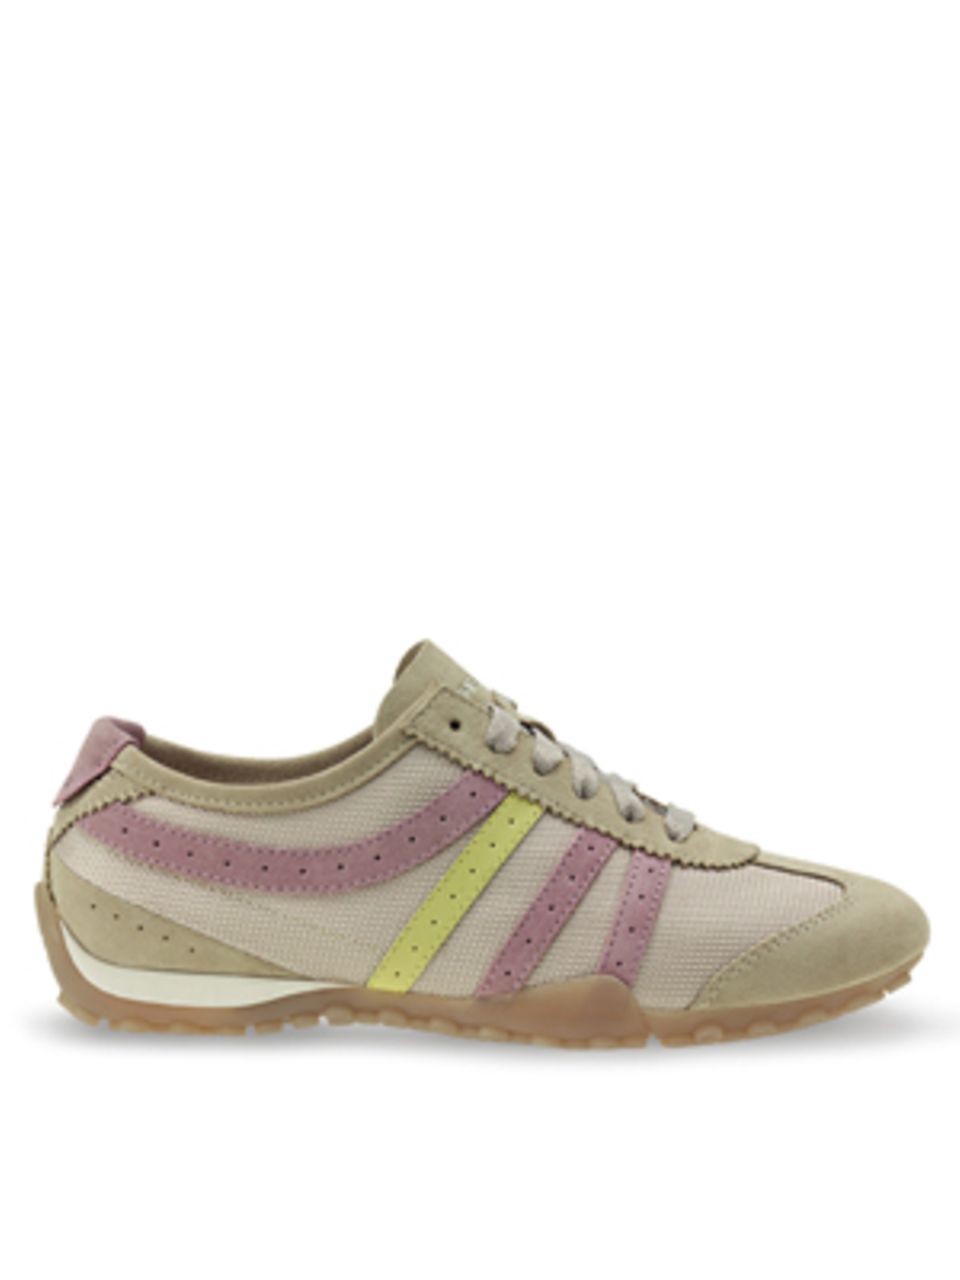 Sneaker mit roséfarbenen und gelben Streifen von Geox, um 84,90 Euro.